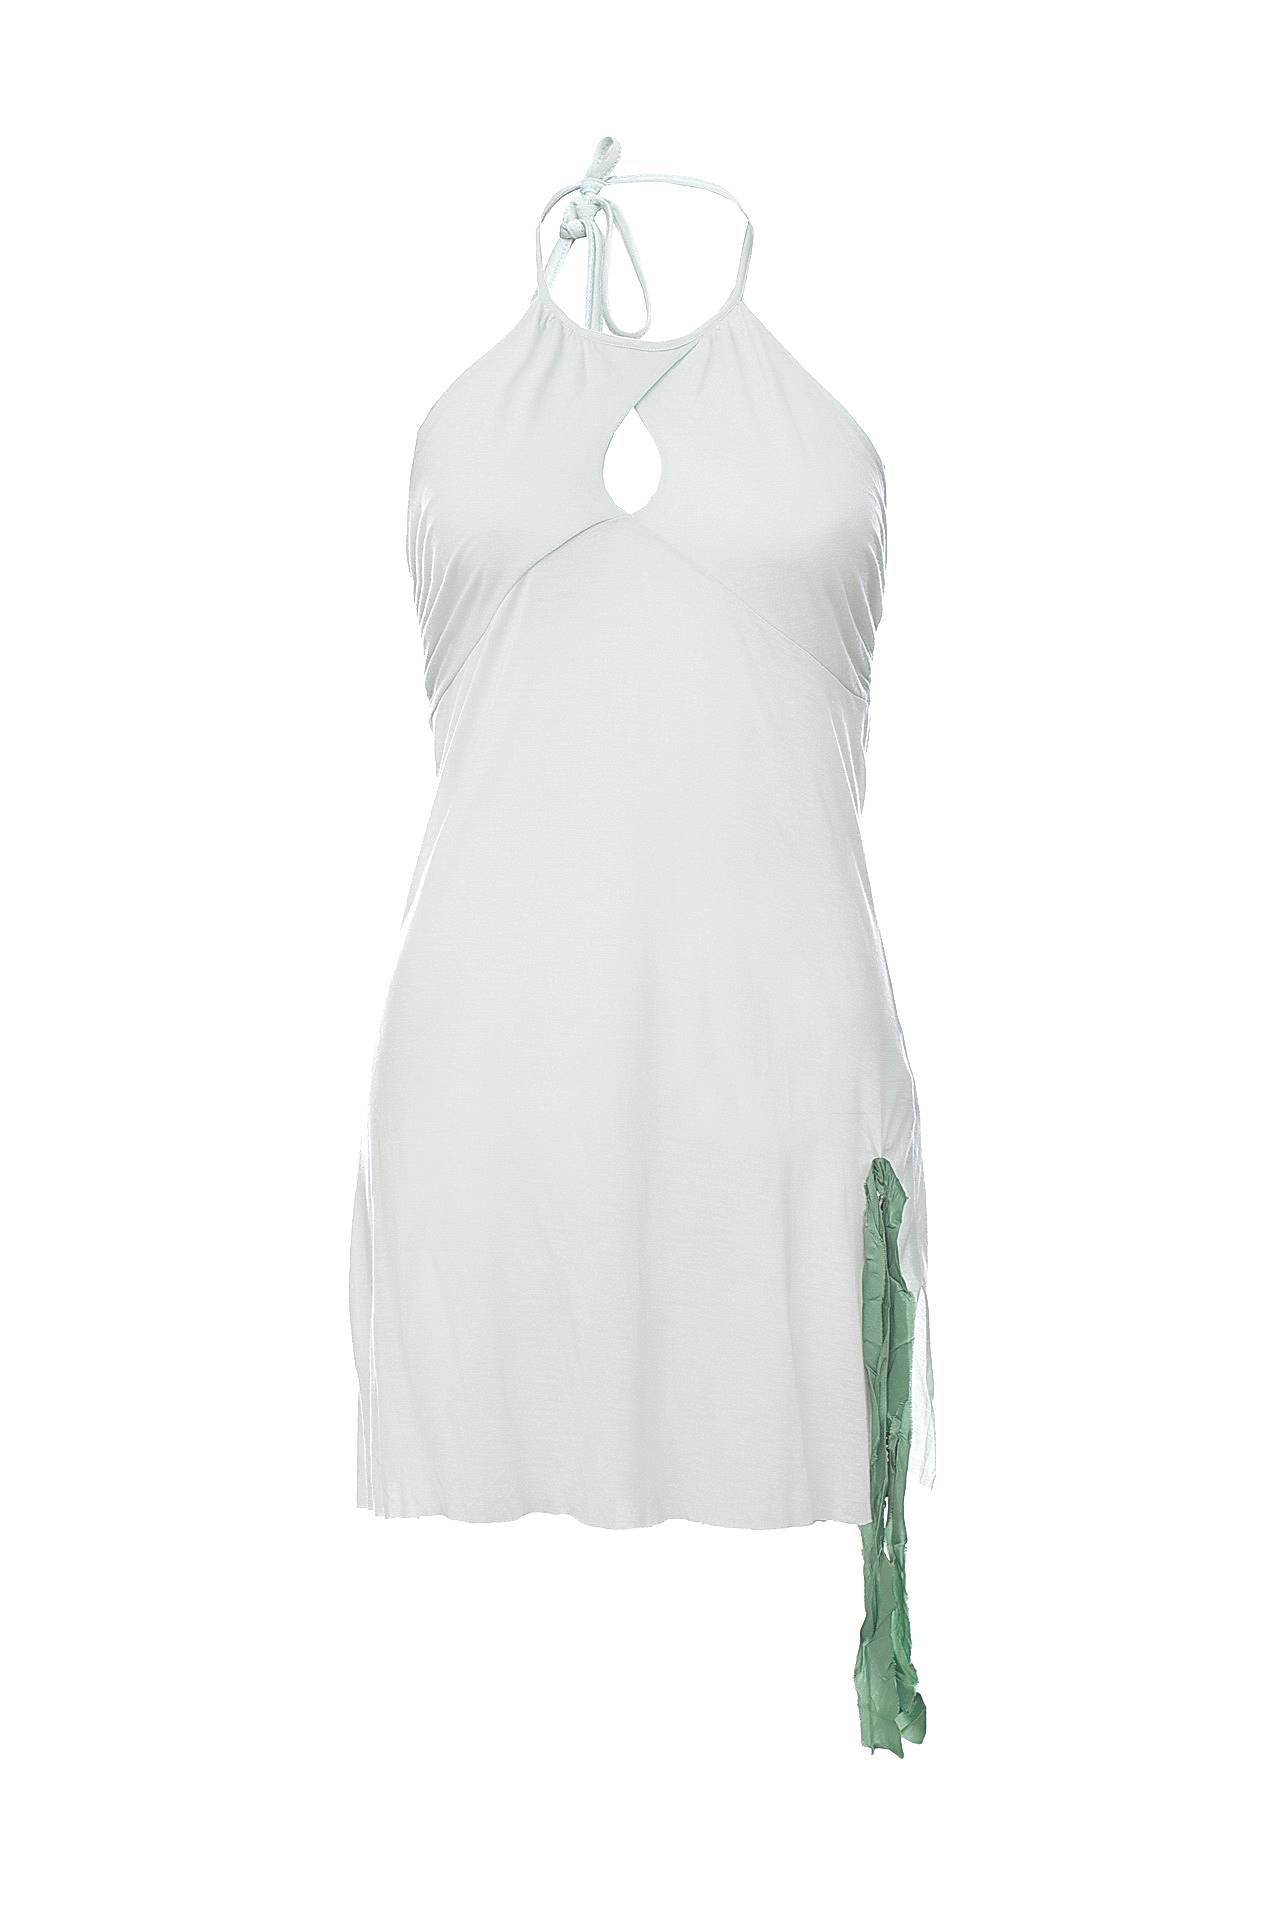 Одежда женская Топ SCEE (204651/17). Купить за 3750 руб.